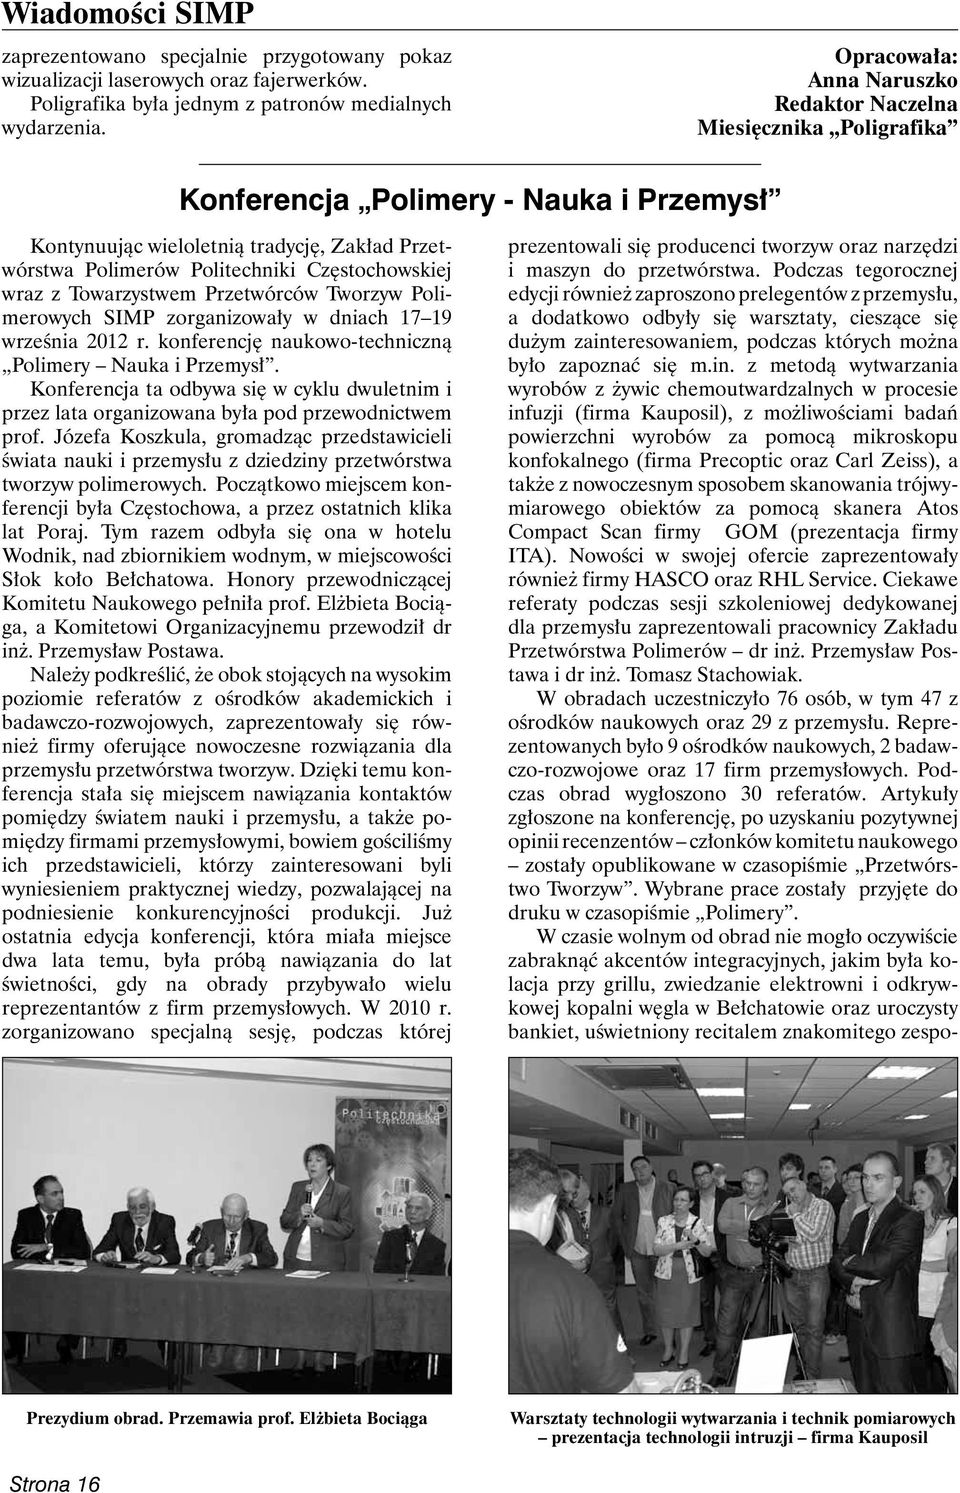 Częstochowskiej wraz z Towarzystwem Przetwórców Tworzyw Polime rowych SIMP zorganizowały w dniach 17 19 września 2012 r. konferencję naukowo-techniczną Polimery Nauka i Przemysł.